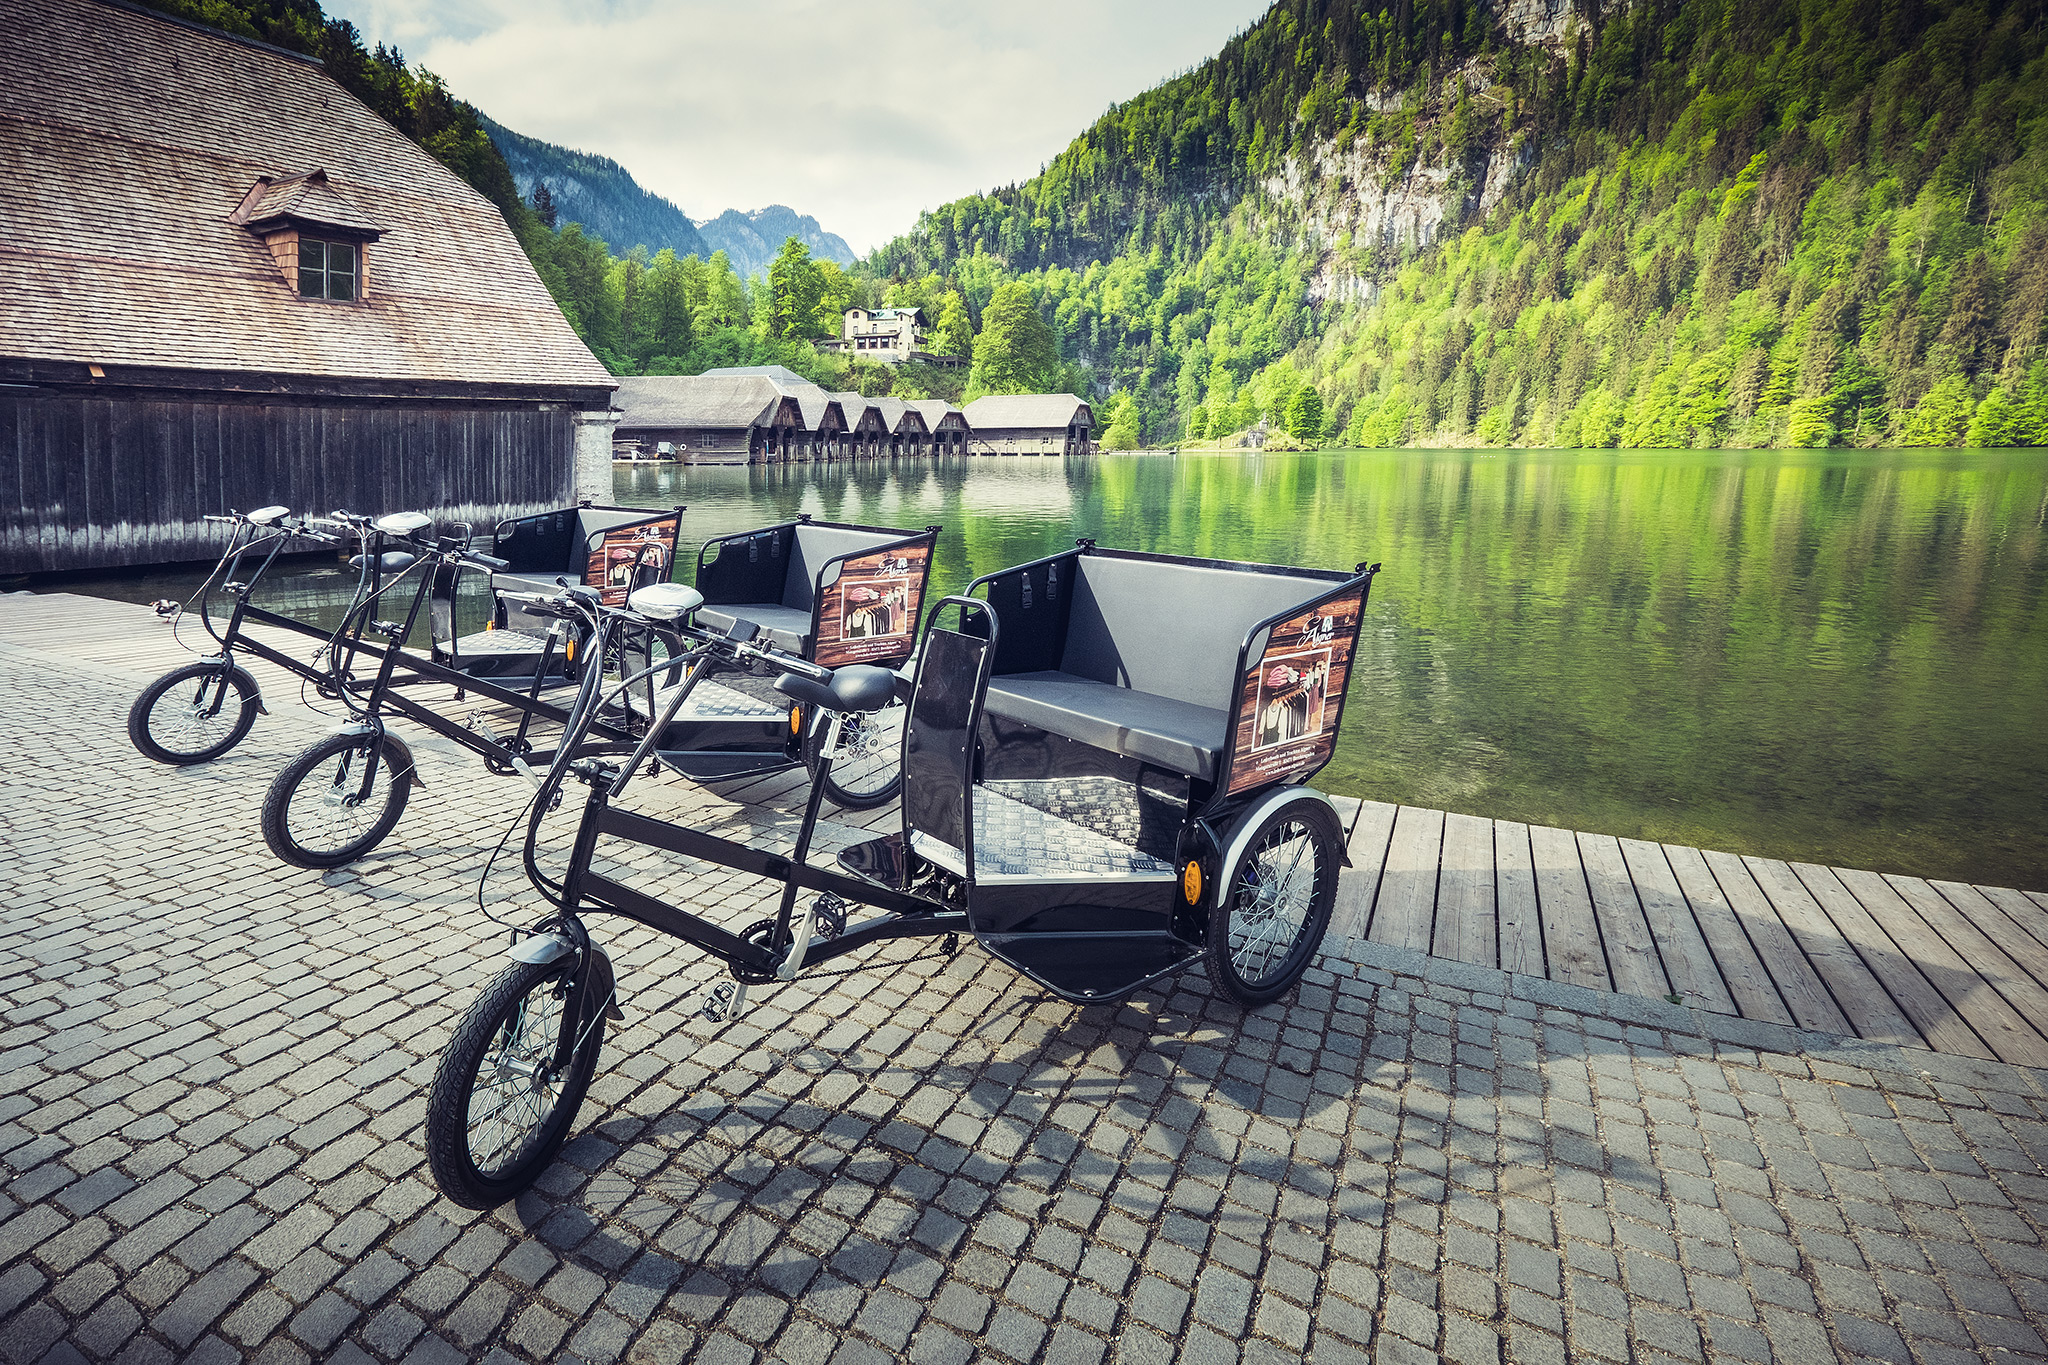 Vorerst stehen 3 Radltaxi am Königssee zur Verfügung